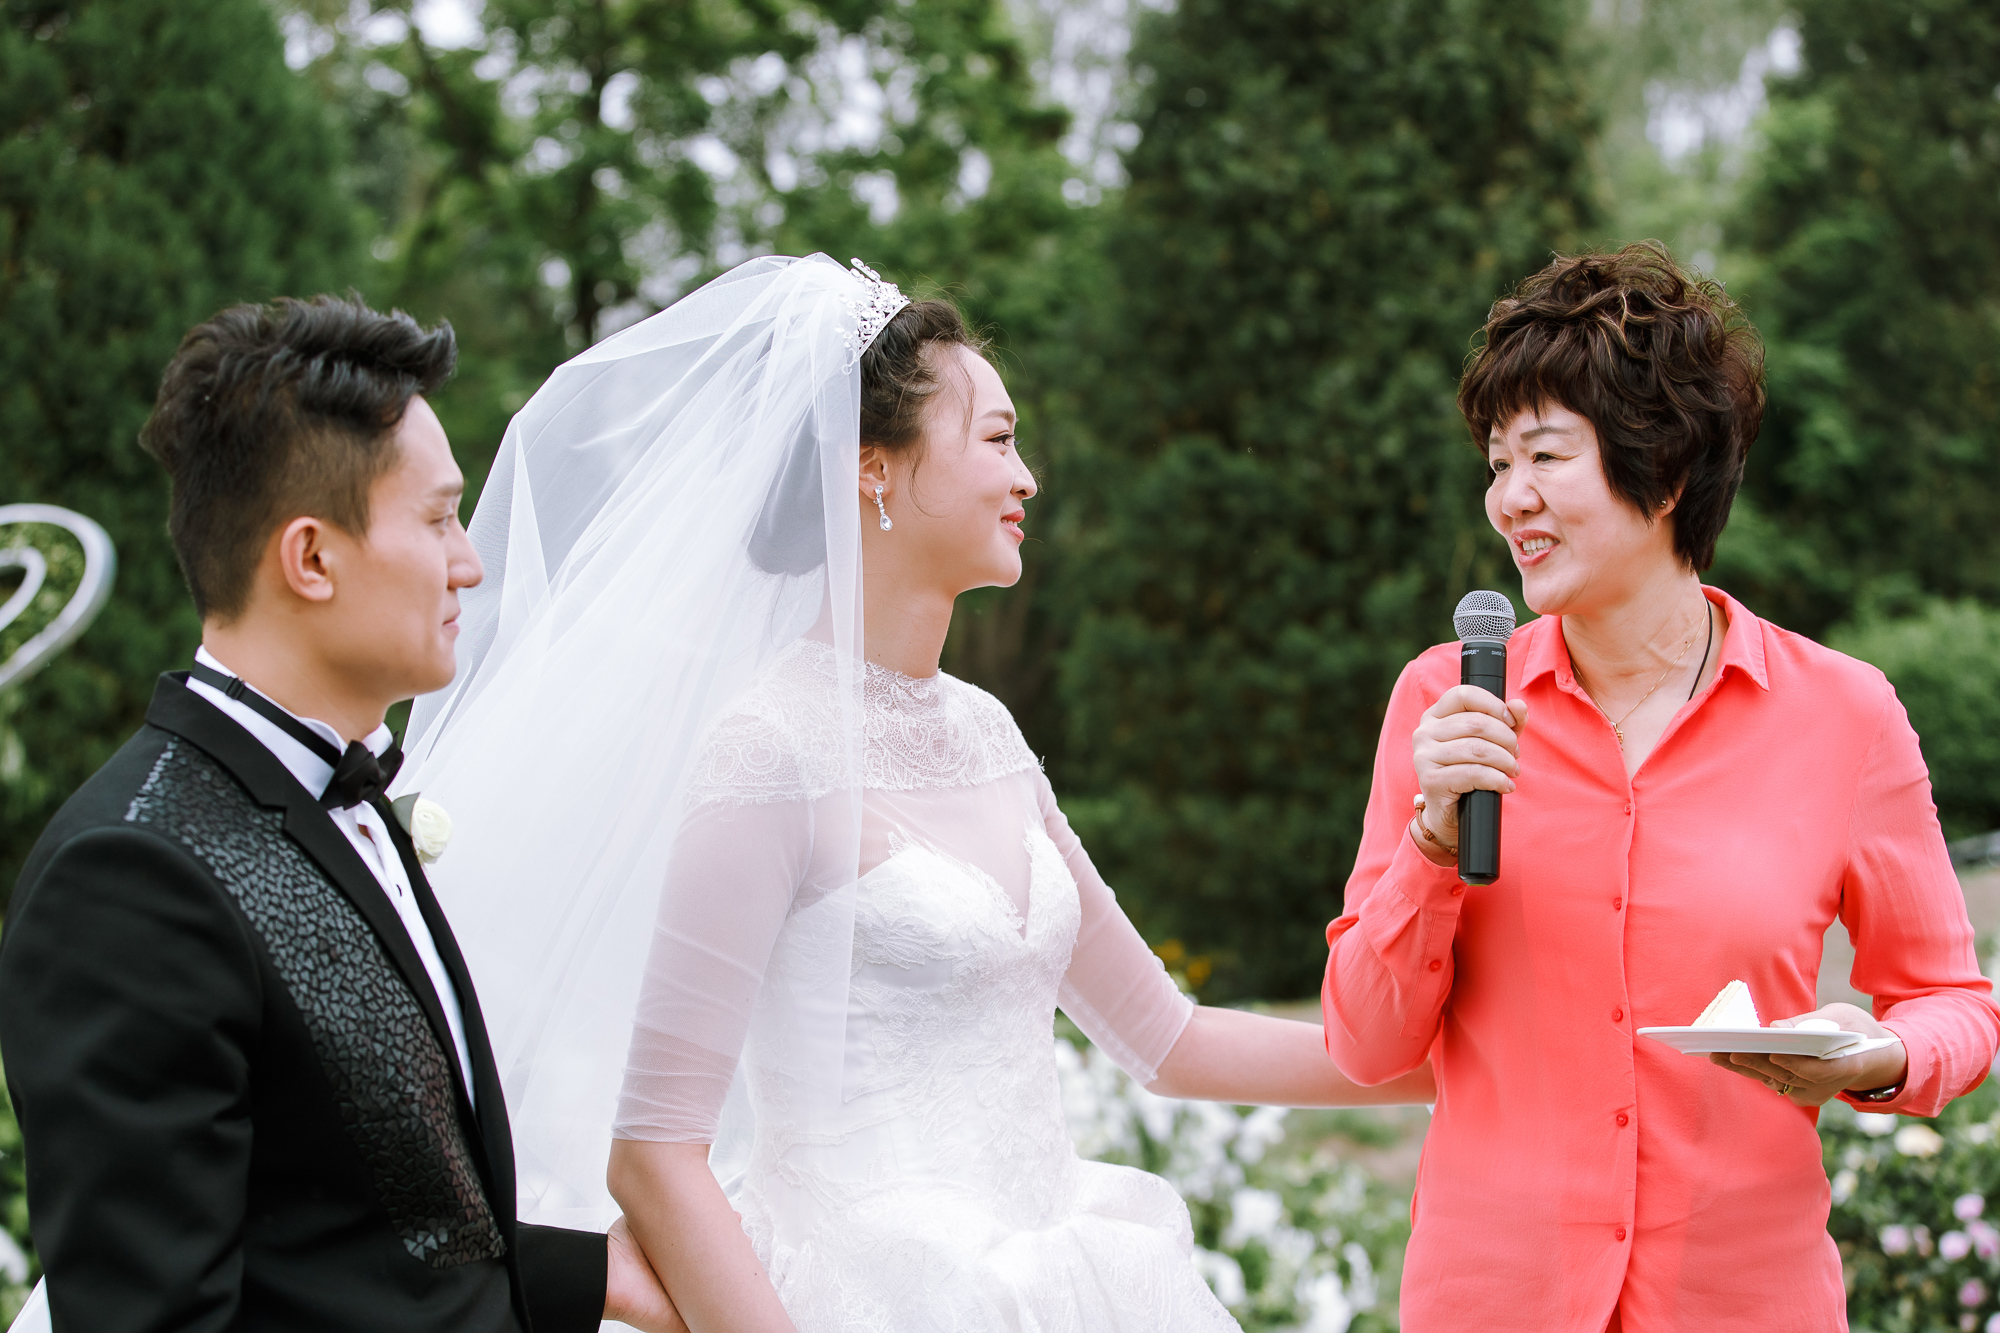 1 21 搜狐娱乐讯 女排姑娘惠若琪今日大婚,婚礼现场照曝光.